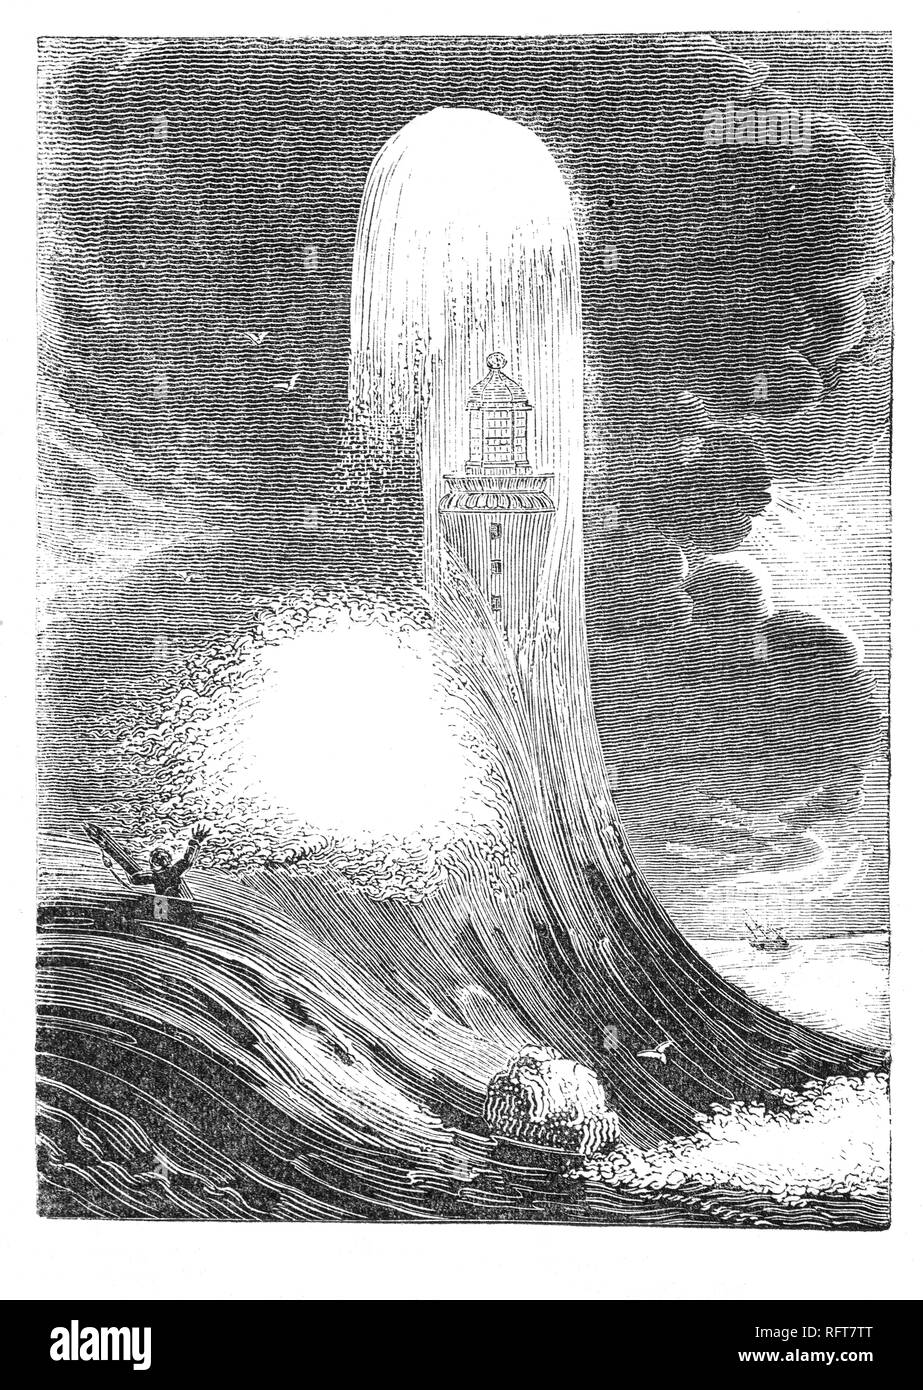 Une vague massive de frapper le troisième phare Eddystone Eddystone Rocks sur la dangereuse, au sud de rame Head, en Angleterre. Conçu par la Société royale, ingénieur civil John Smeaton a modelé la forme sur un chêne, construit de blocs de granit. Il est l'un des premiers 'Lime' hydraulique, un béton qui guérie sous l'eau, et mis au point une technique de fixation de l'aide de blocs de granit et d'aronde en douelles. La construction a commencé en 1756 à Millbay et la lumière fut allumée pour la première fois le 16 octobre 1759. En 1841 D'importantes rénovations ont été faites et il est resté en usage jusqu'en 1877 et fut reconstruite sur Plymouth Hoe. Banque D'Images